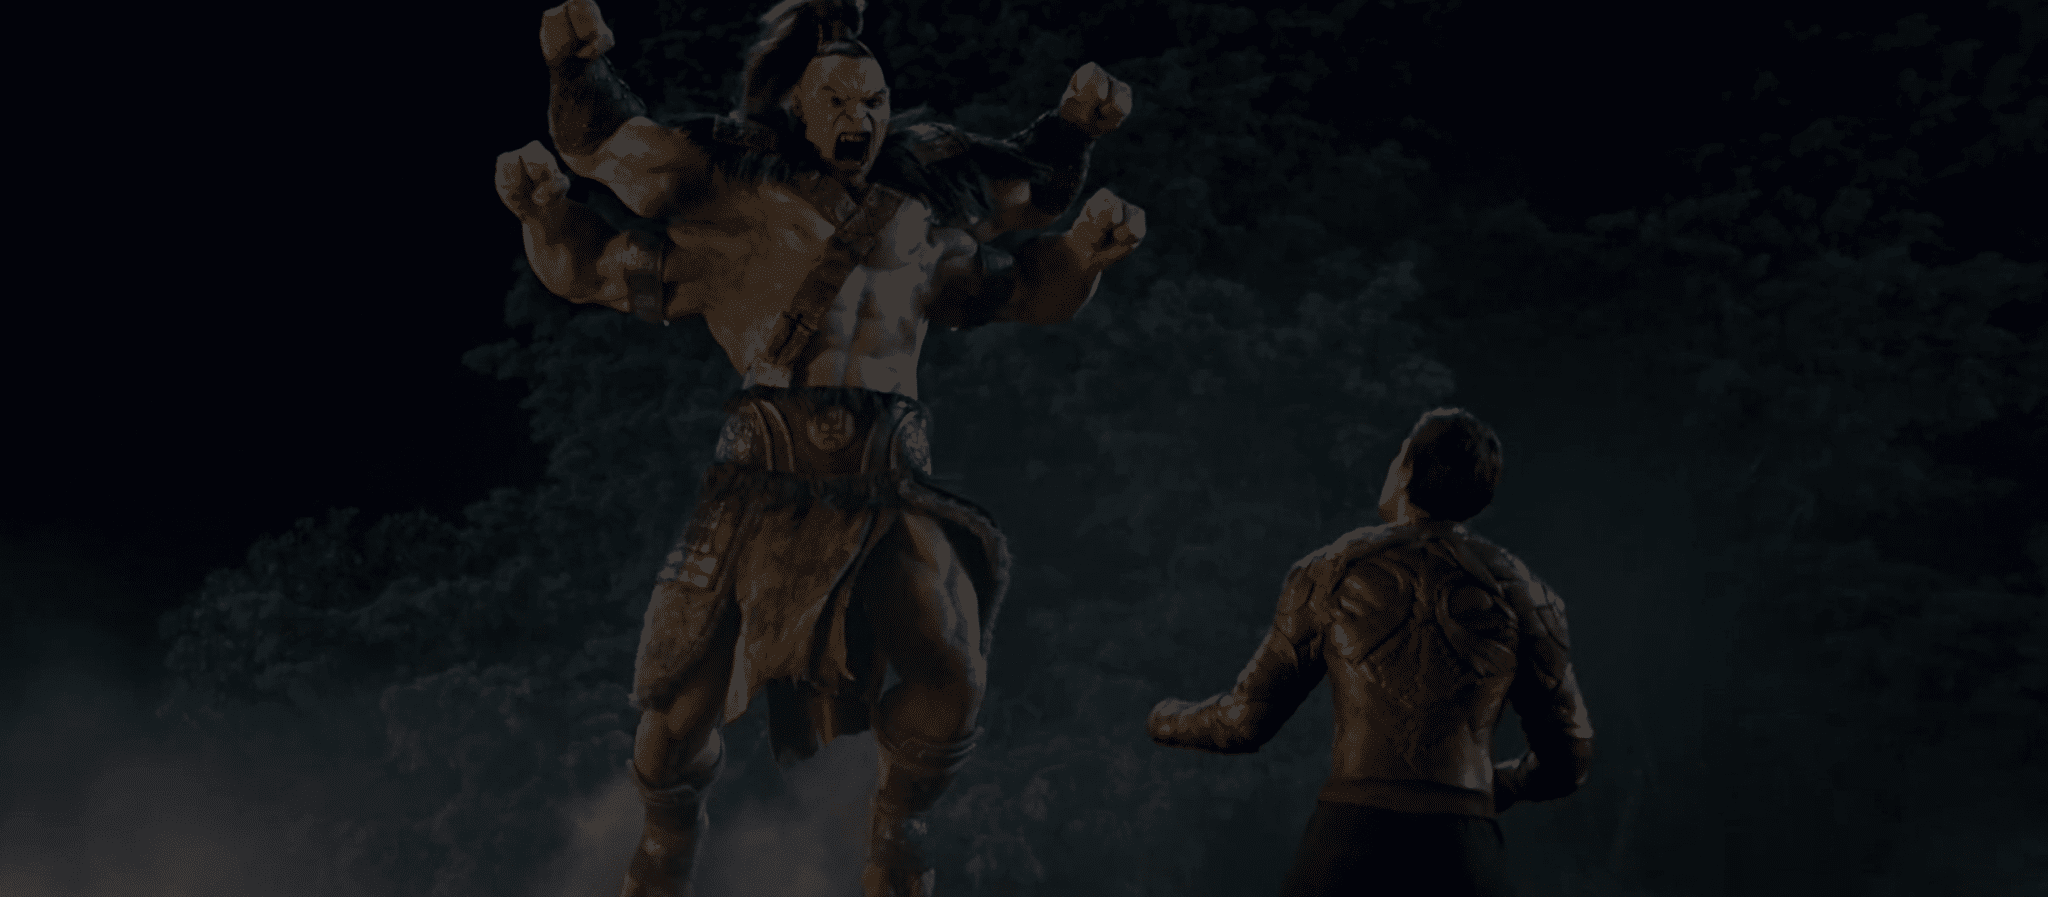 Mortal Kombat (2021) Review - On Tap Sports Net